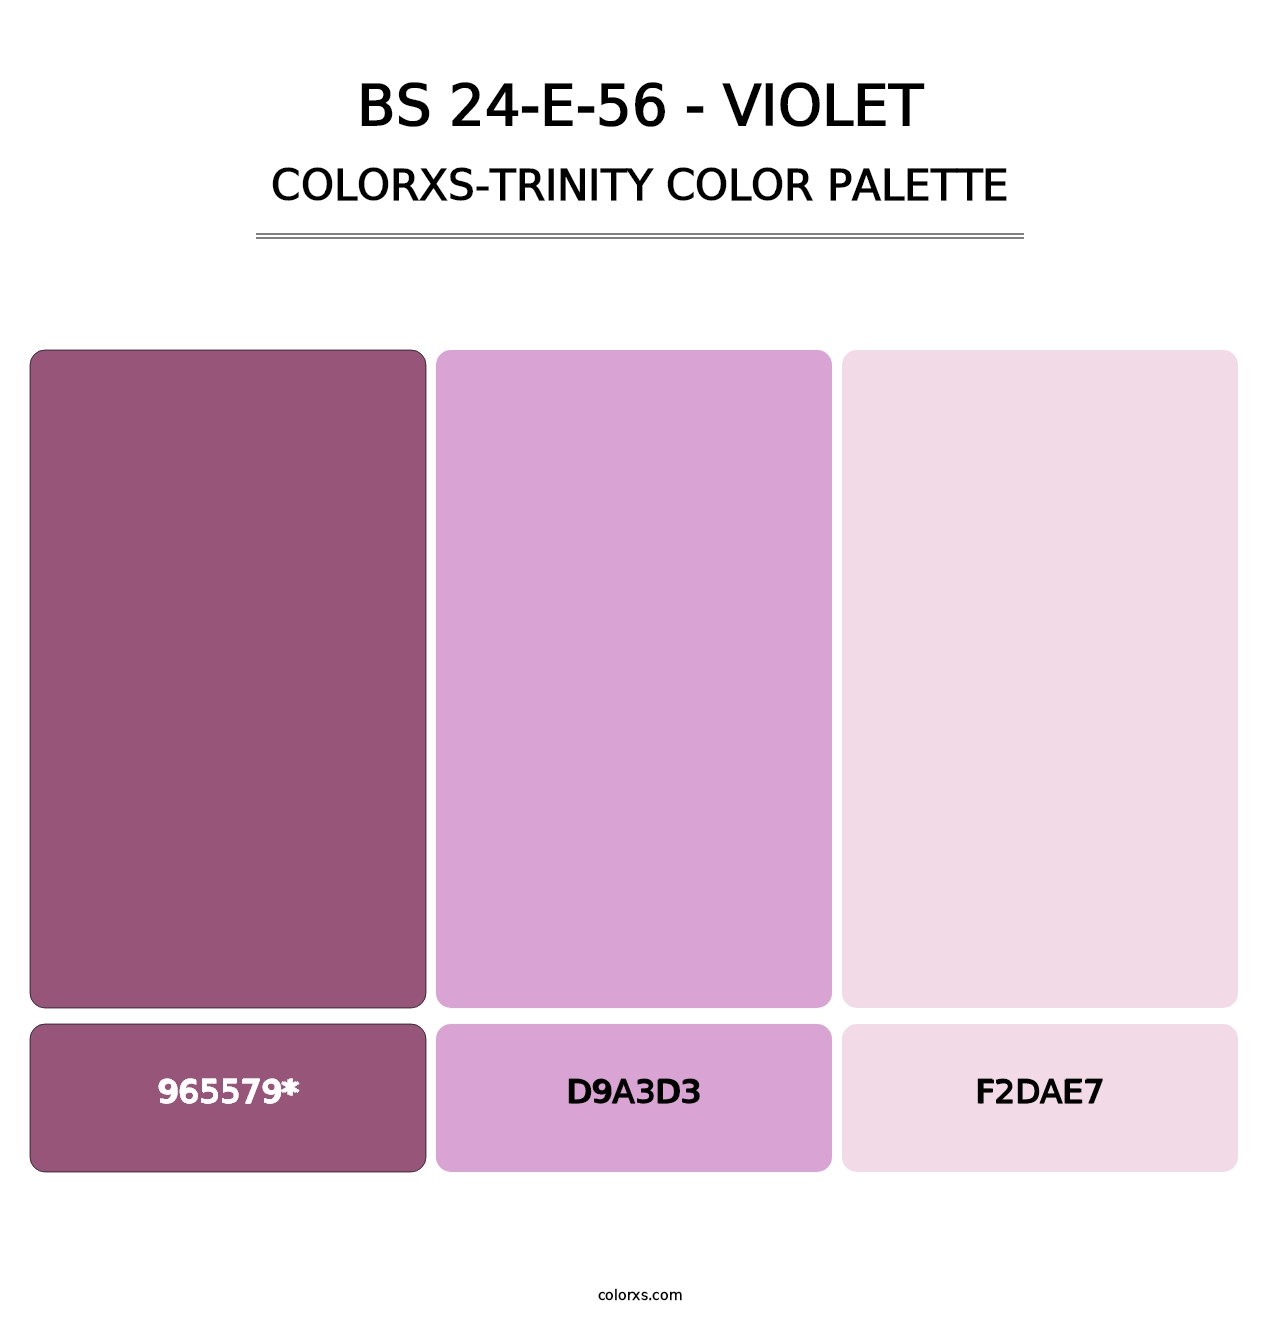 BS 24-E-56 - Violet - Colorxs Trinity Palette